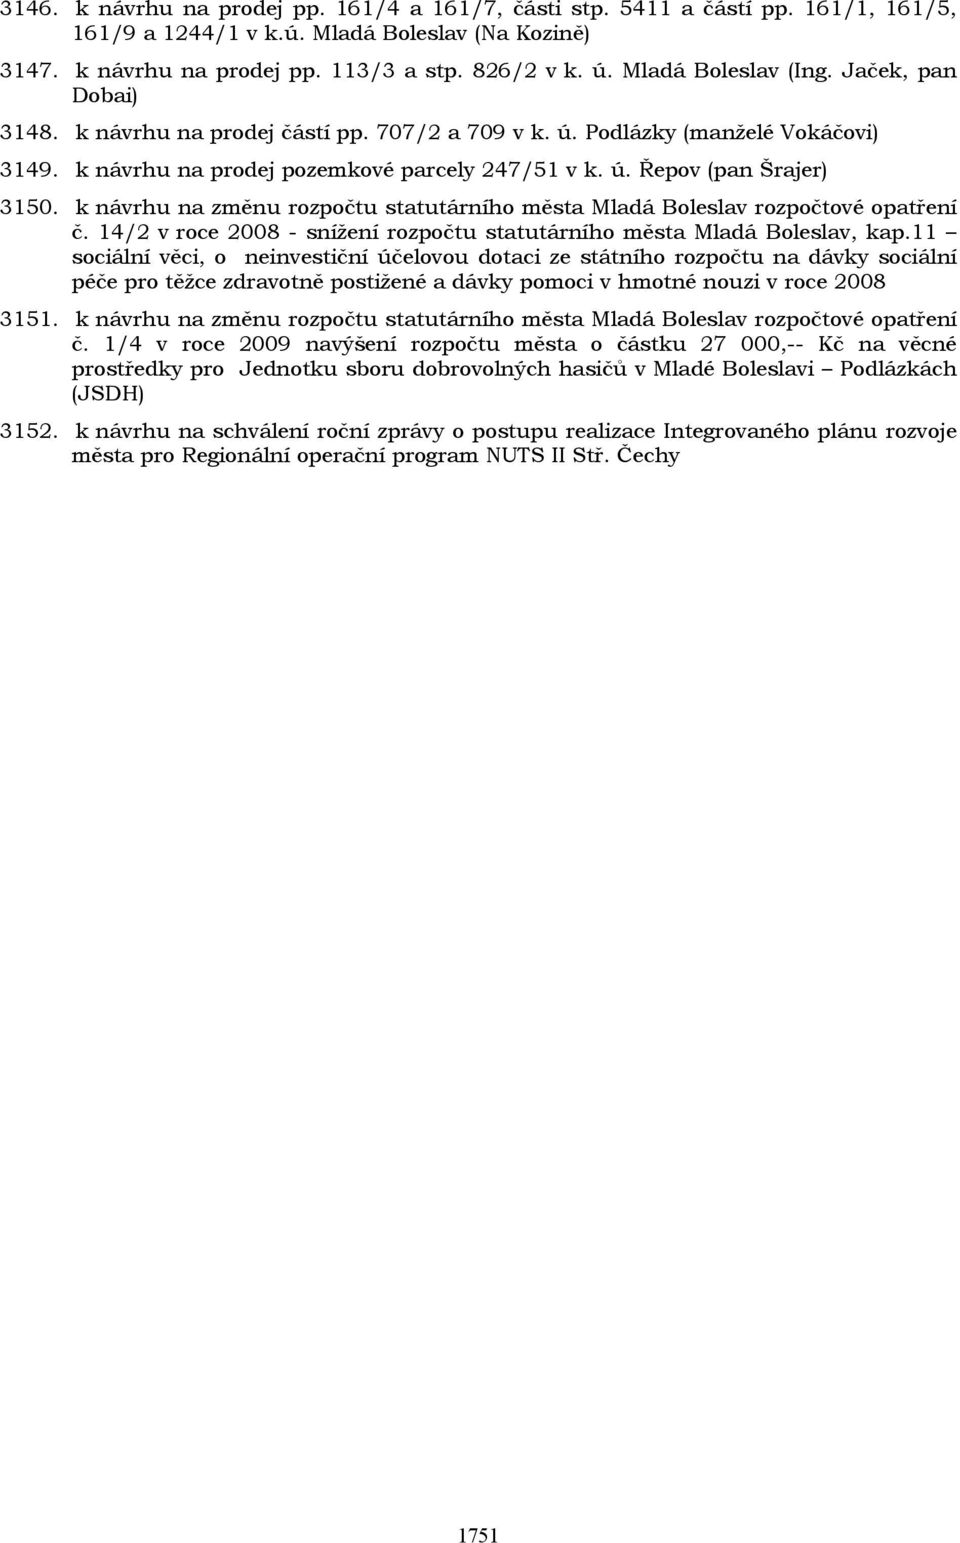 k návrhu na změnu rozpočtu statutárního města Mladá Boleslav rozpočtové opatření č. 14/2 v roce 2008 - snížení rozpočtu statutárního města Mladá Boleslav, kap.